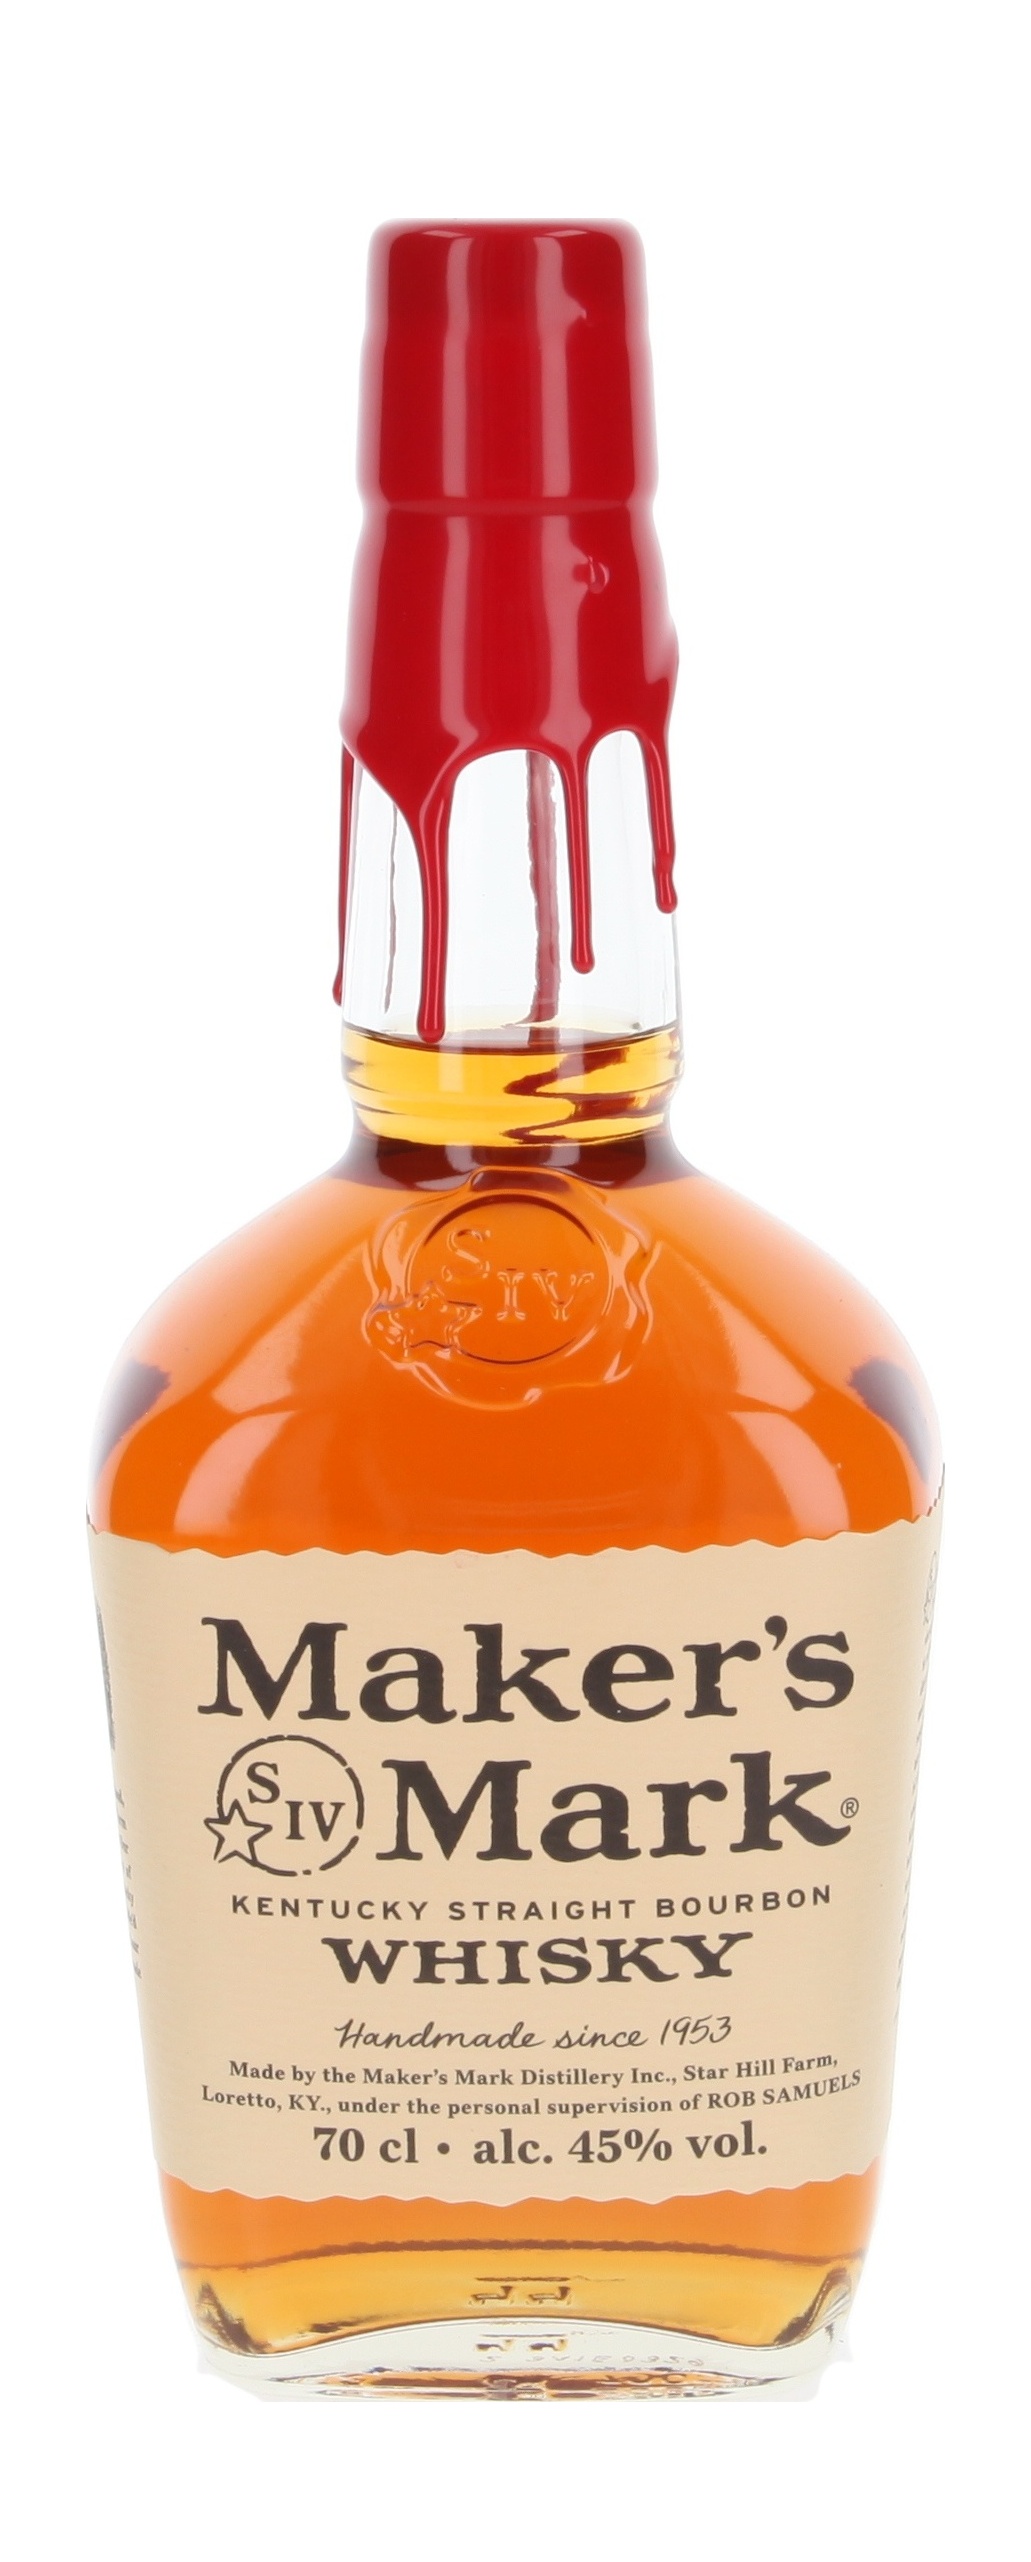 Maker's Mark Kentucky Straight Bourbon Whisky